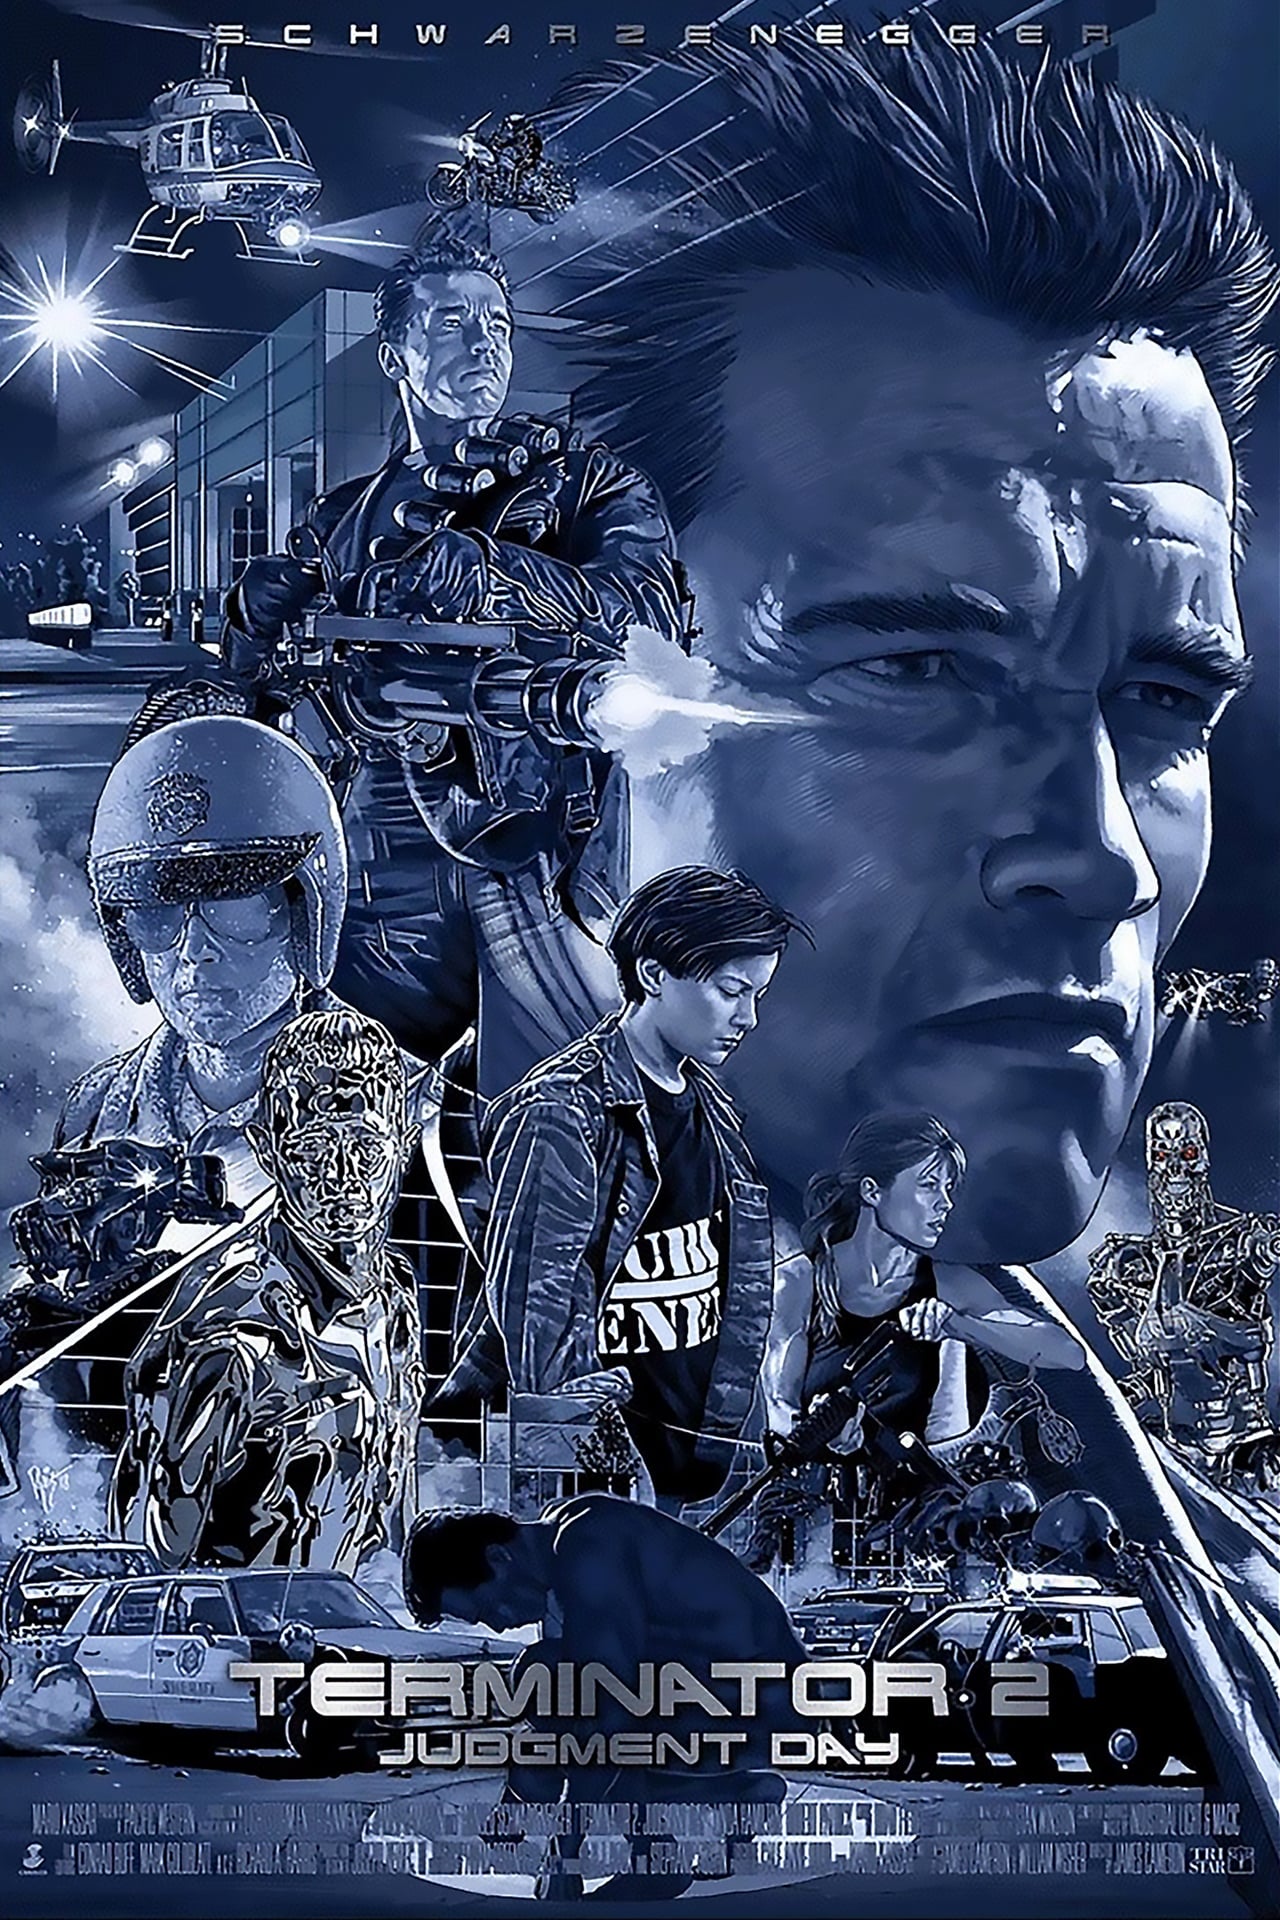 EN - Terminator 2 Judgment Day 4K (1991)